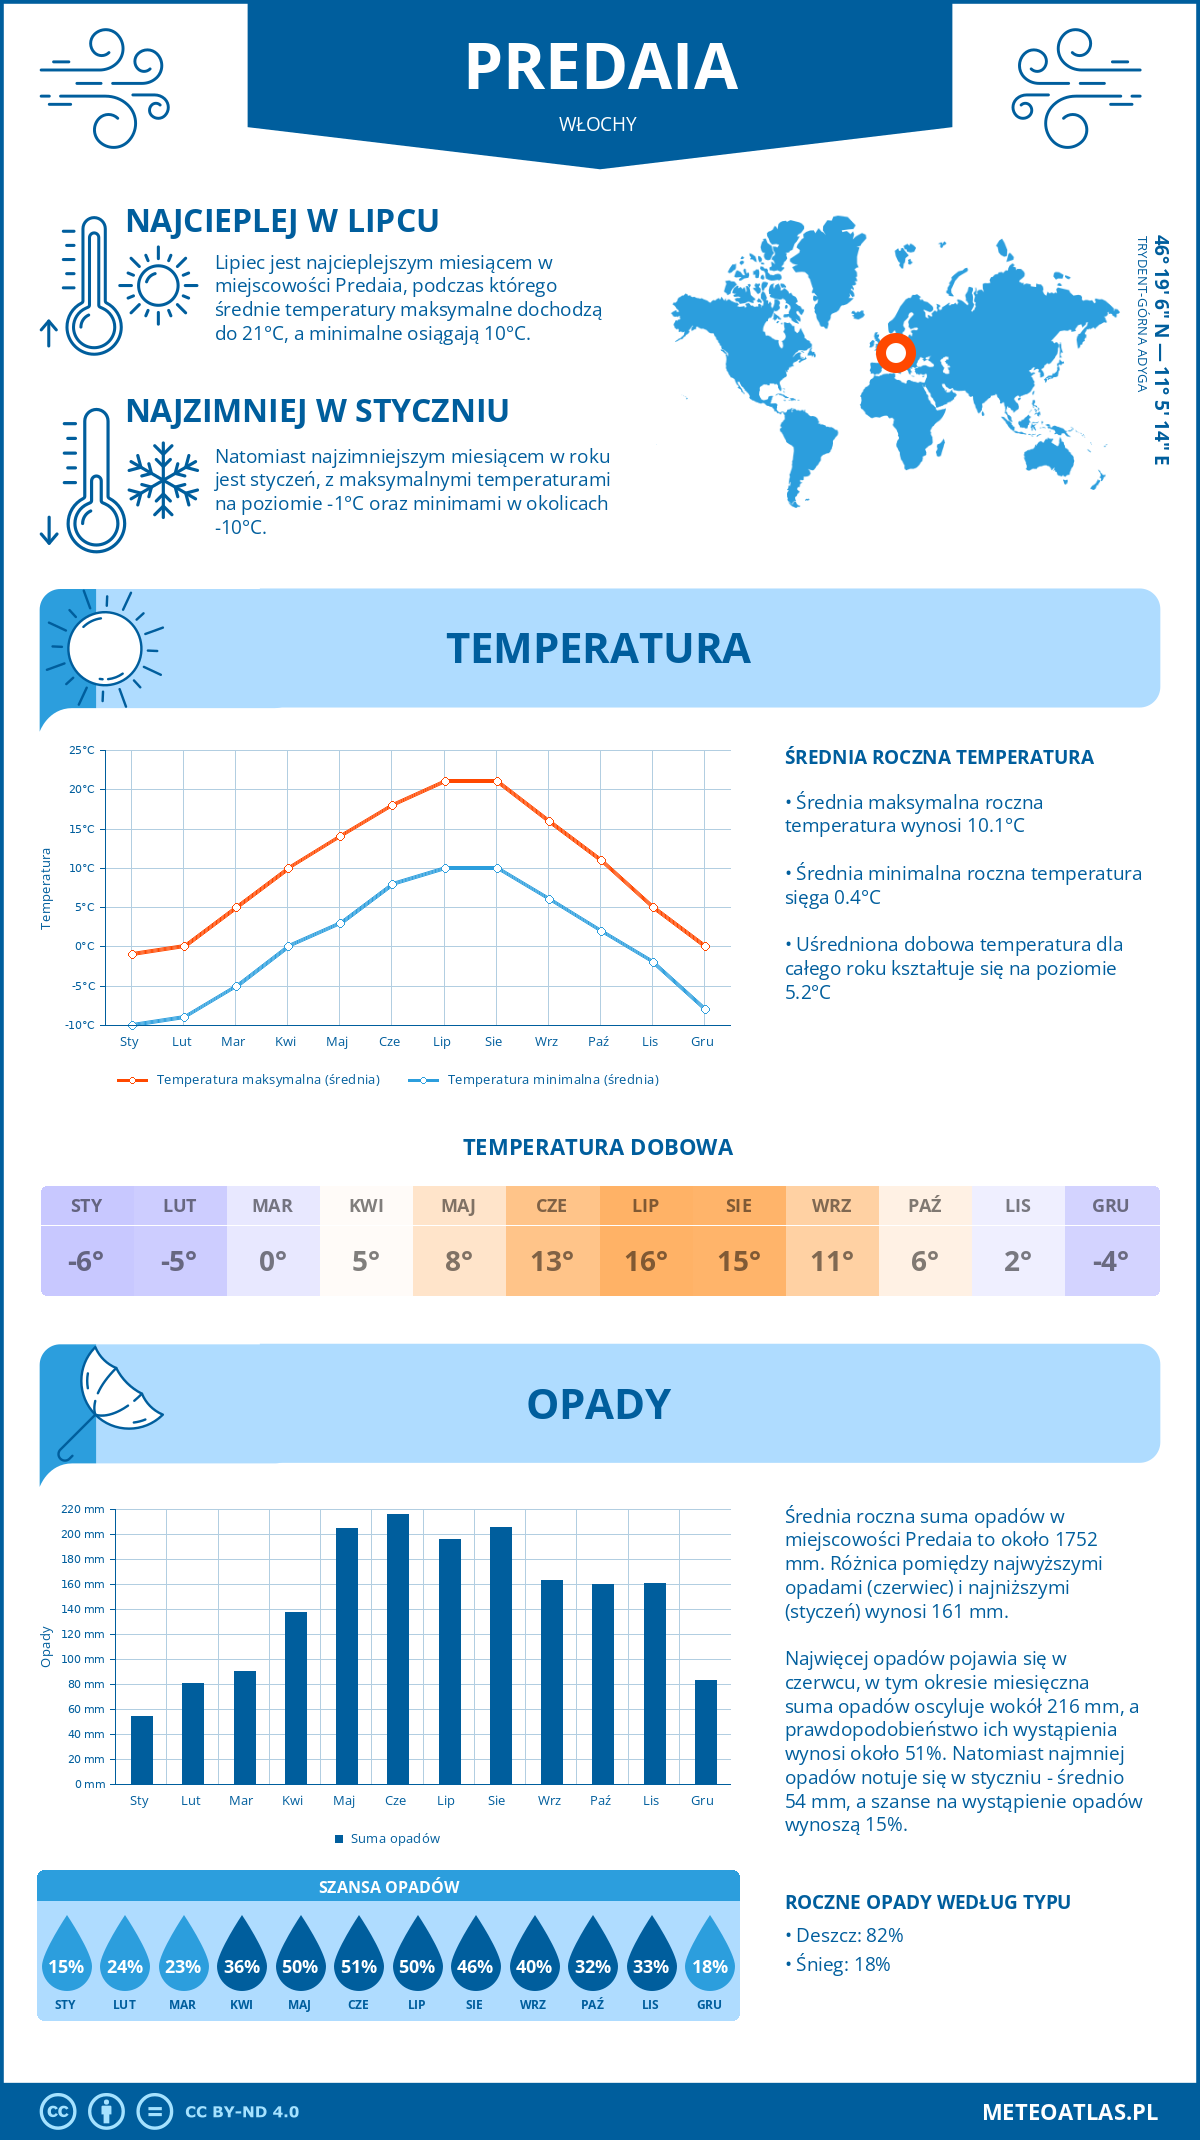 Pogoda Predaia (Włochy). Temperatura oraz opady.